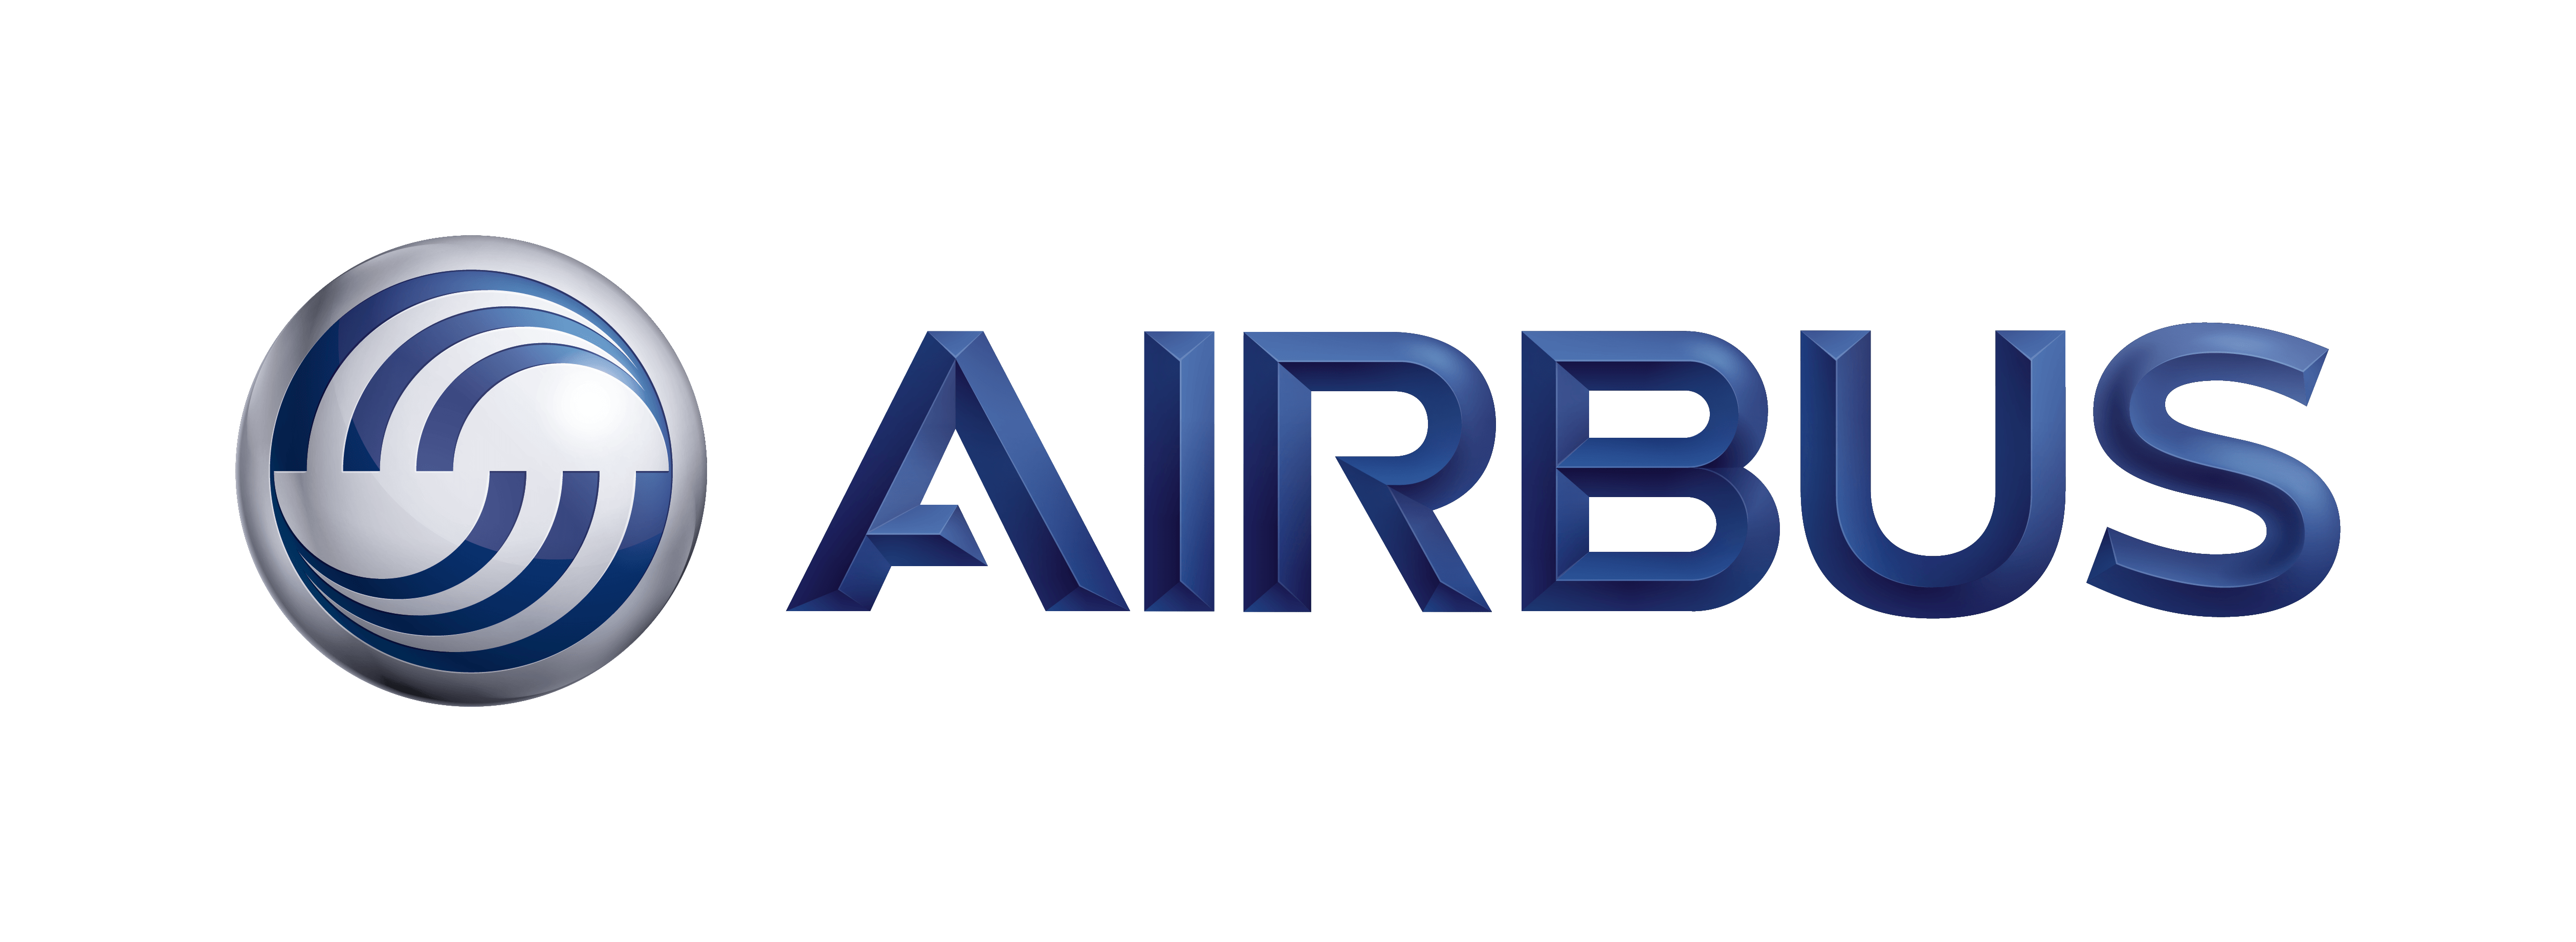 Airbus Group – Logos Downlo